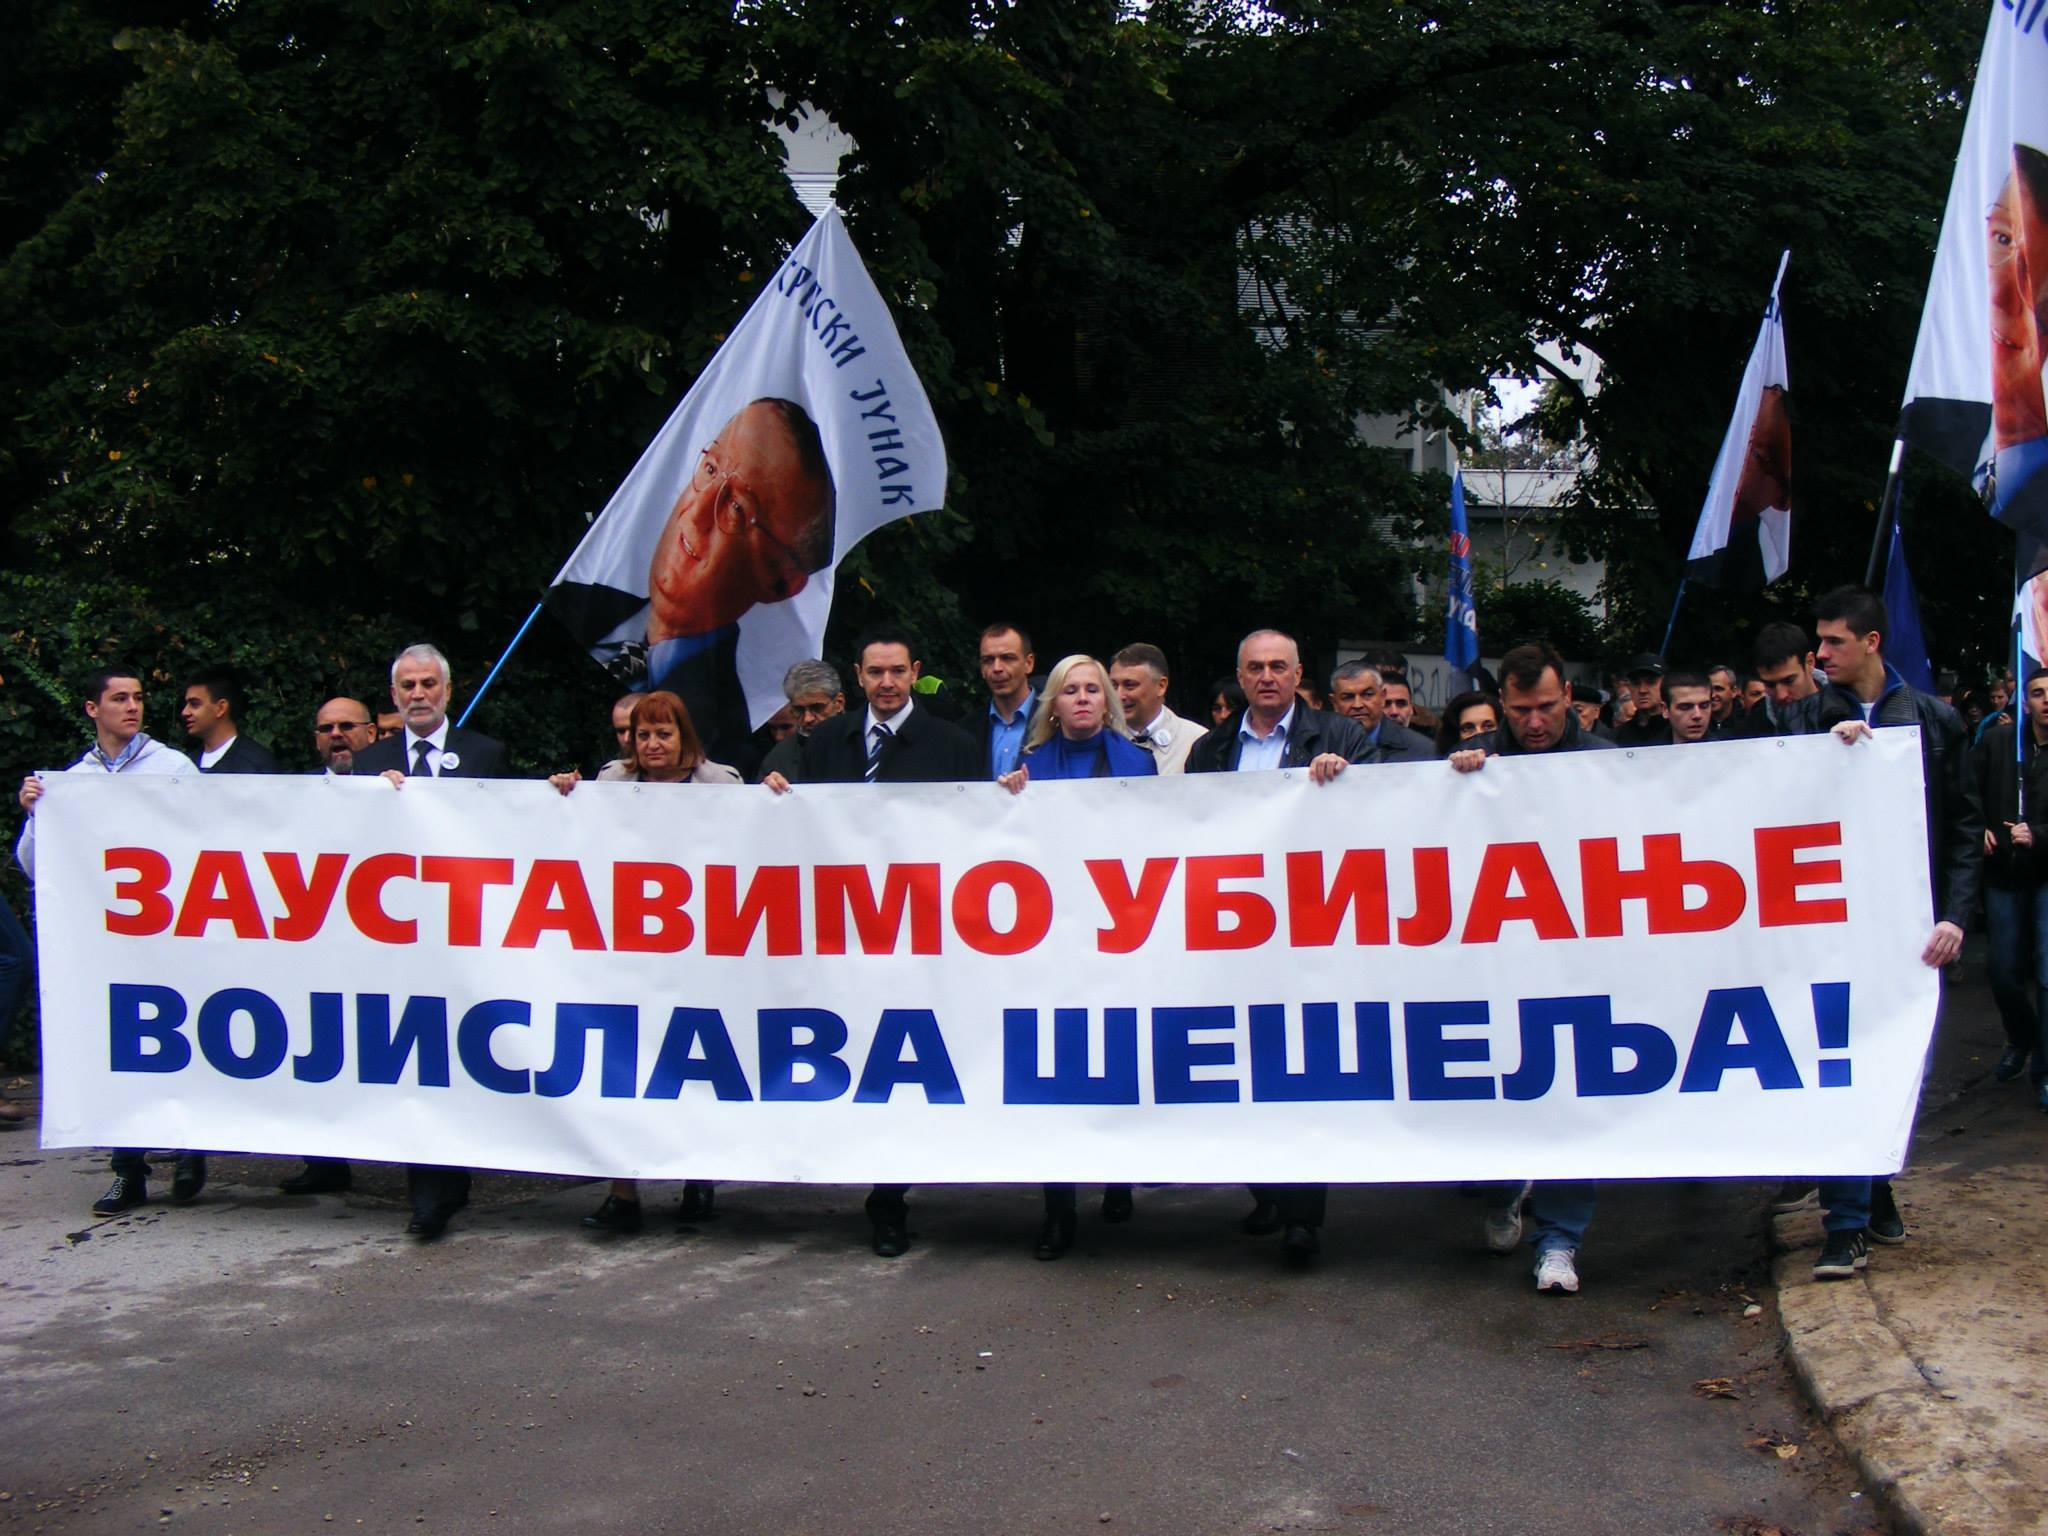 ПРВАЦ ХАГ: Помозите радикалима да ослободе Војислава Шешеља из хашког казамата!